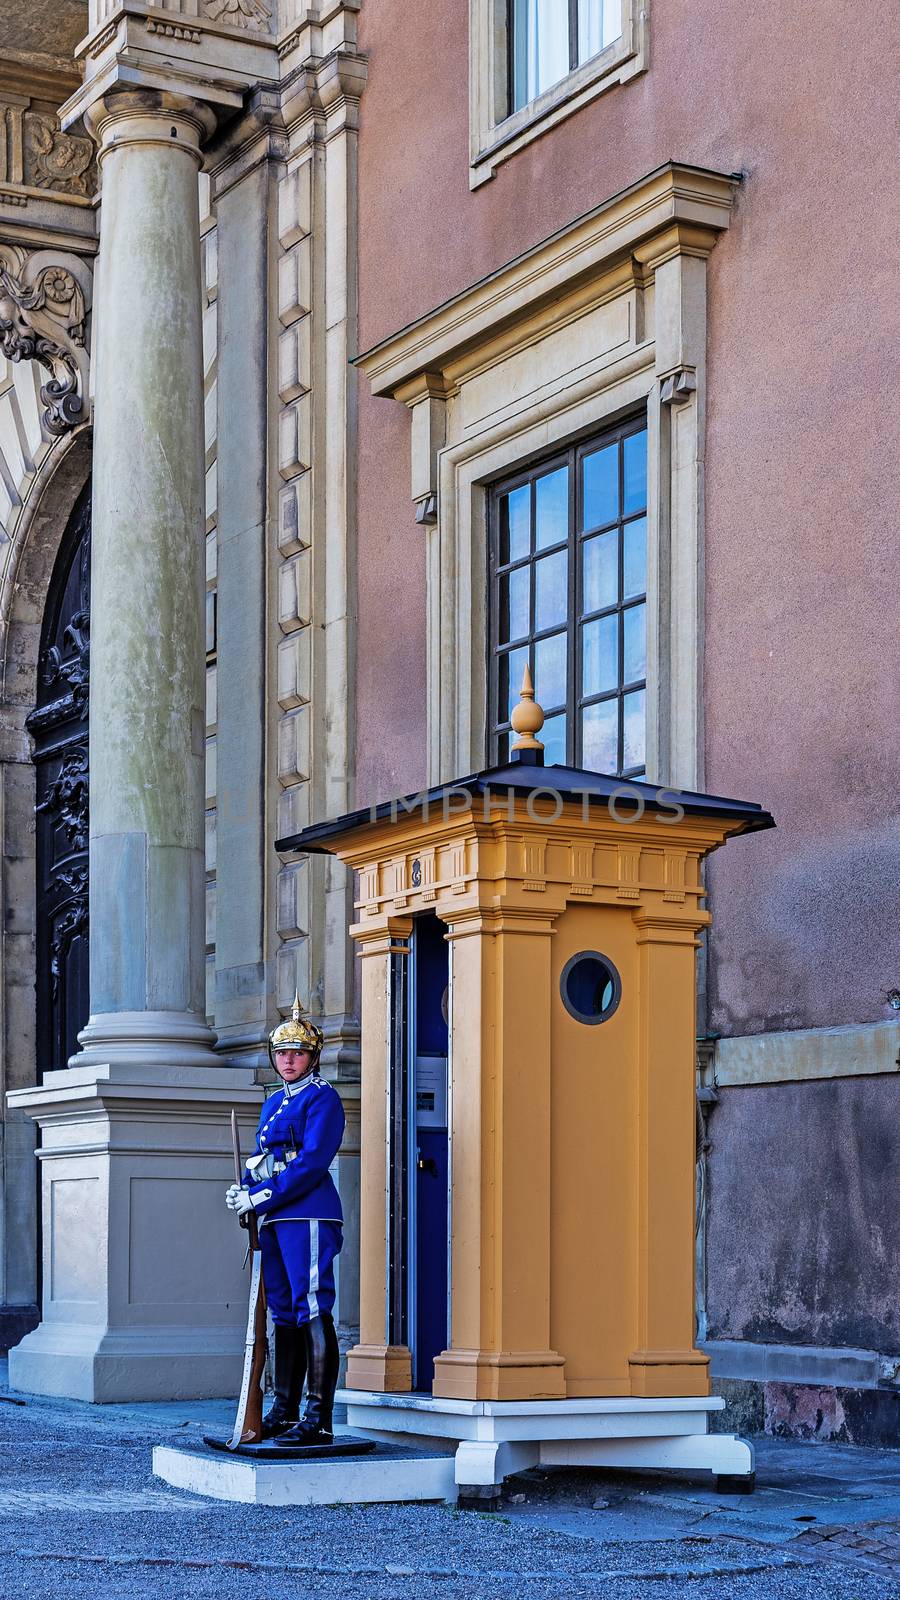 The wardress on duty by pawel_szczepanski